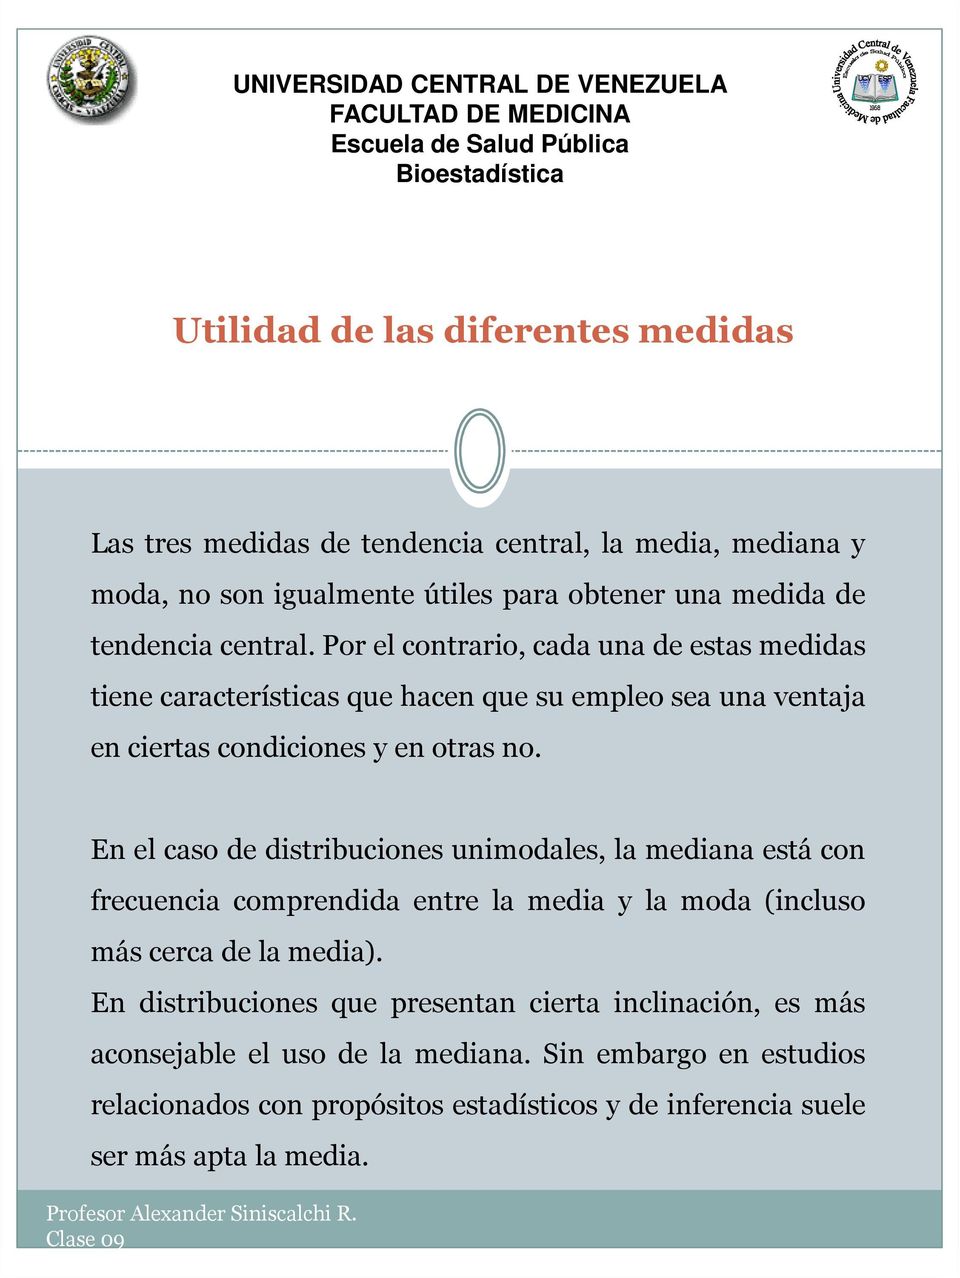 En el caso de distribuciones unimodales, la mediana está con frecuencia comprendida entre la media y la moda (incluso más cerca de la media).